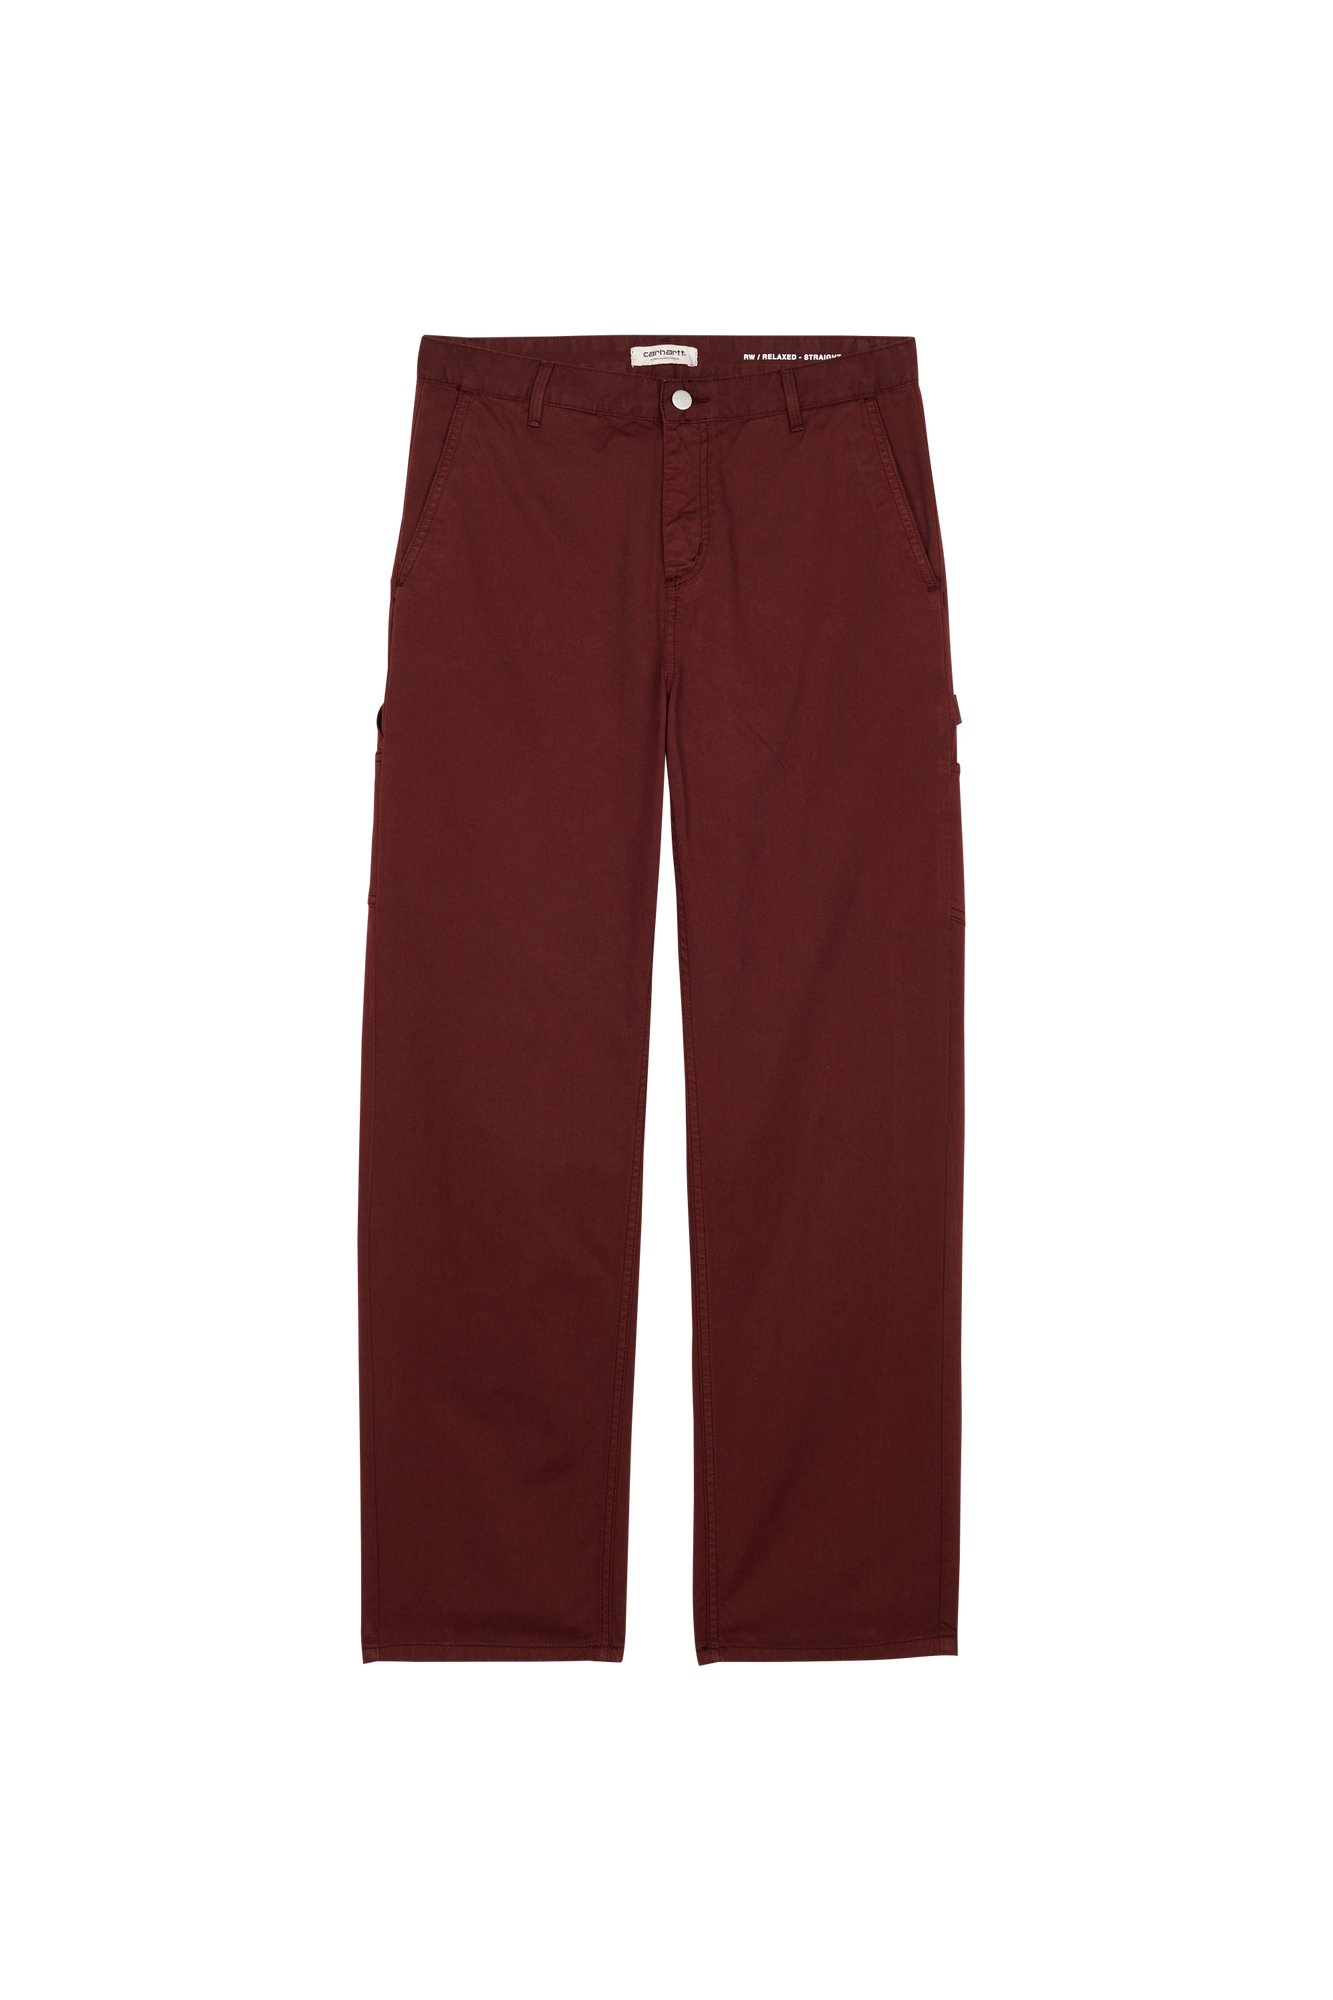 Carhartt Wip - Pantalon droit en coton